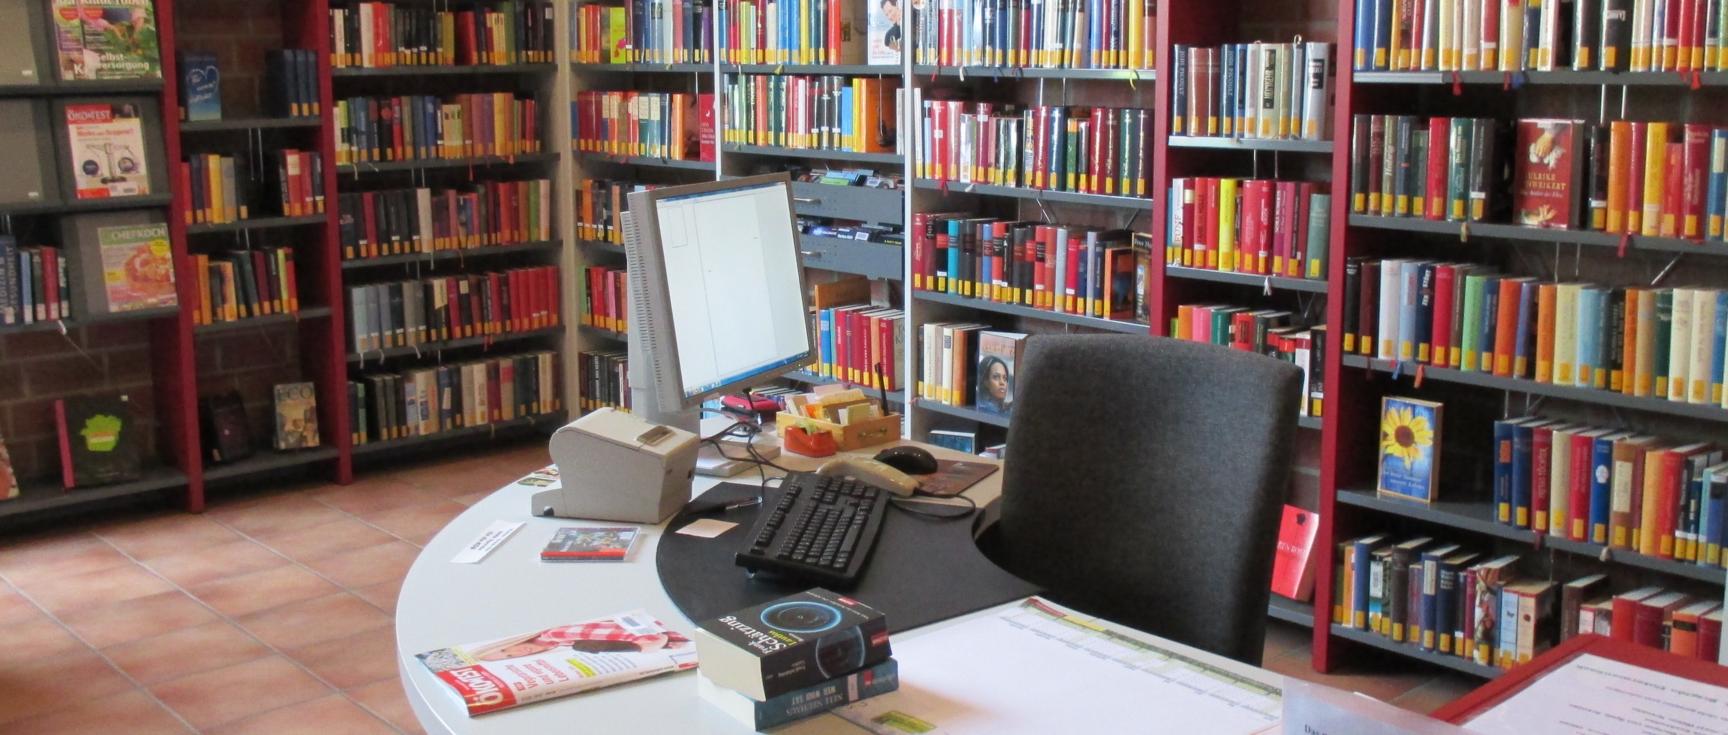 Unsere Bücherei (c) Karin Hergeth-Blum